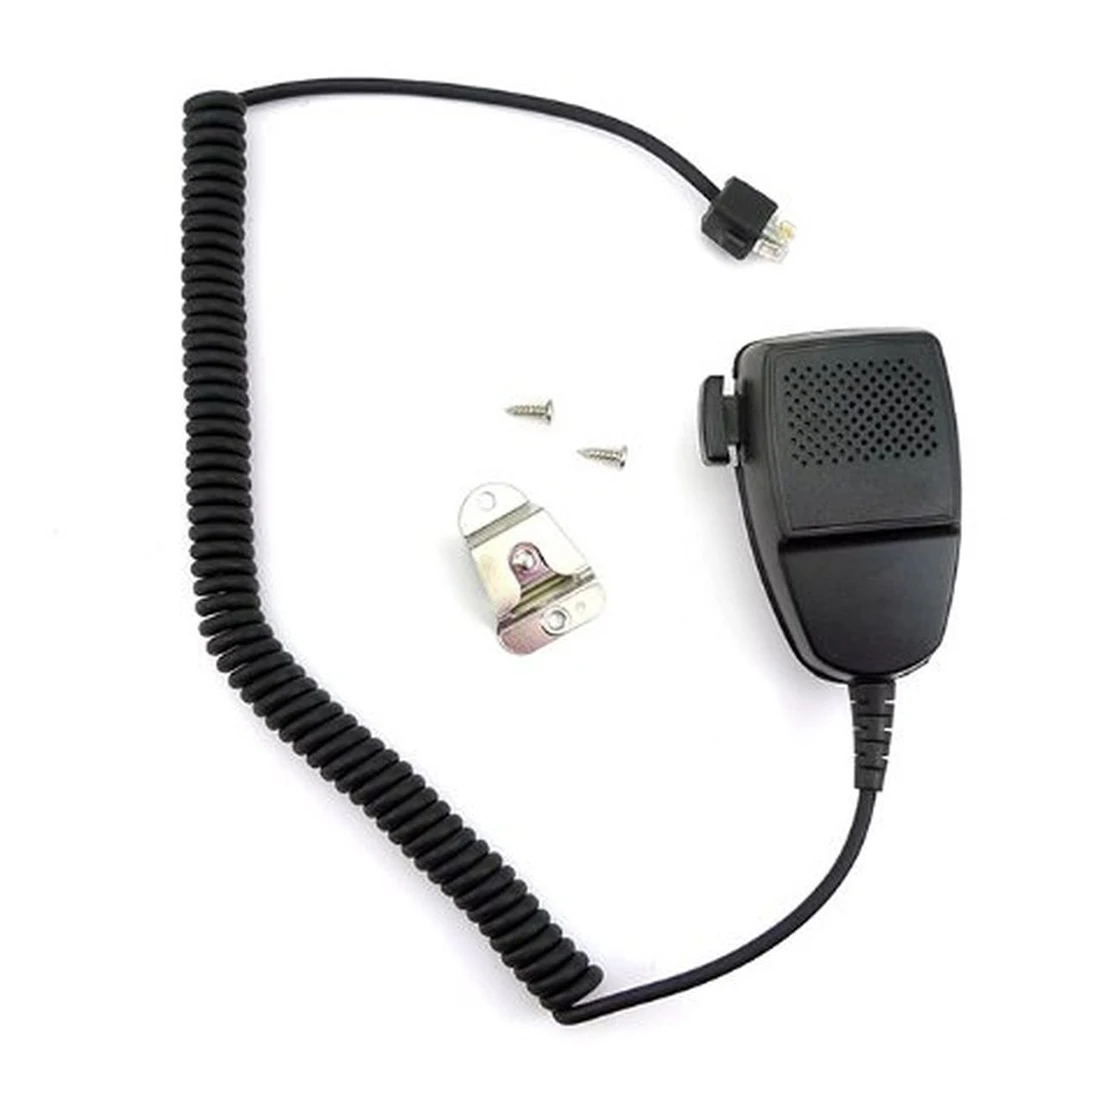 Новые 8-pin динамик микрофон для Motorola домофон радио автомобиль мобильный радио GM300 GM338 GM950 HMN3596A